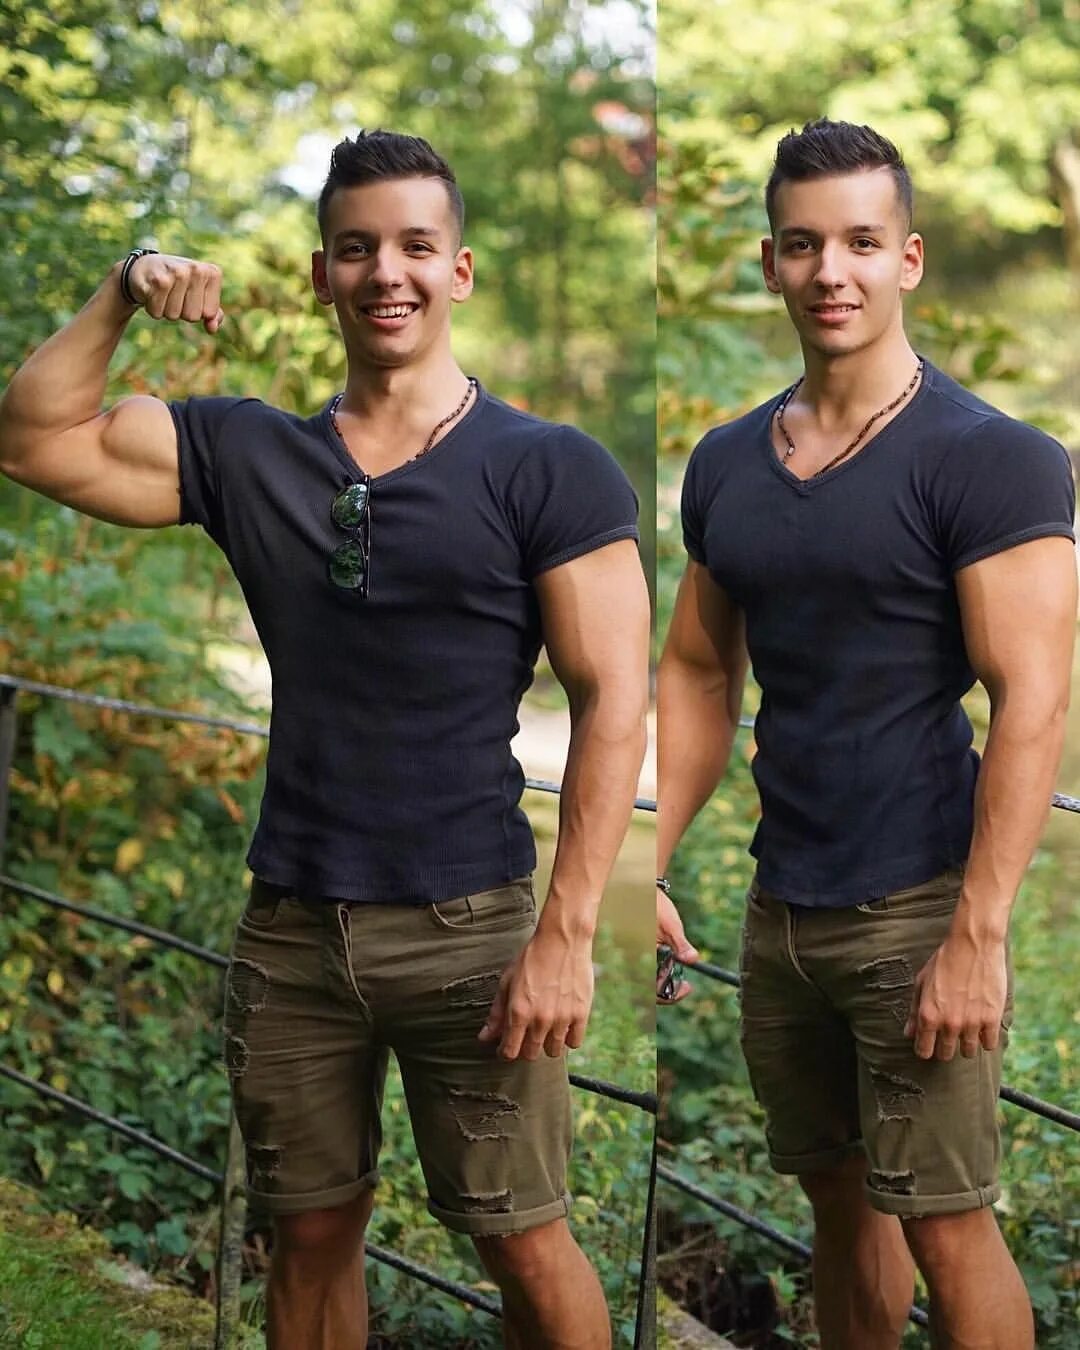 22 июля мужчина. Radoslav Raychev. Парень 22 года. Фото мужчины 22 года. Как выглядят парни в 22 года.